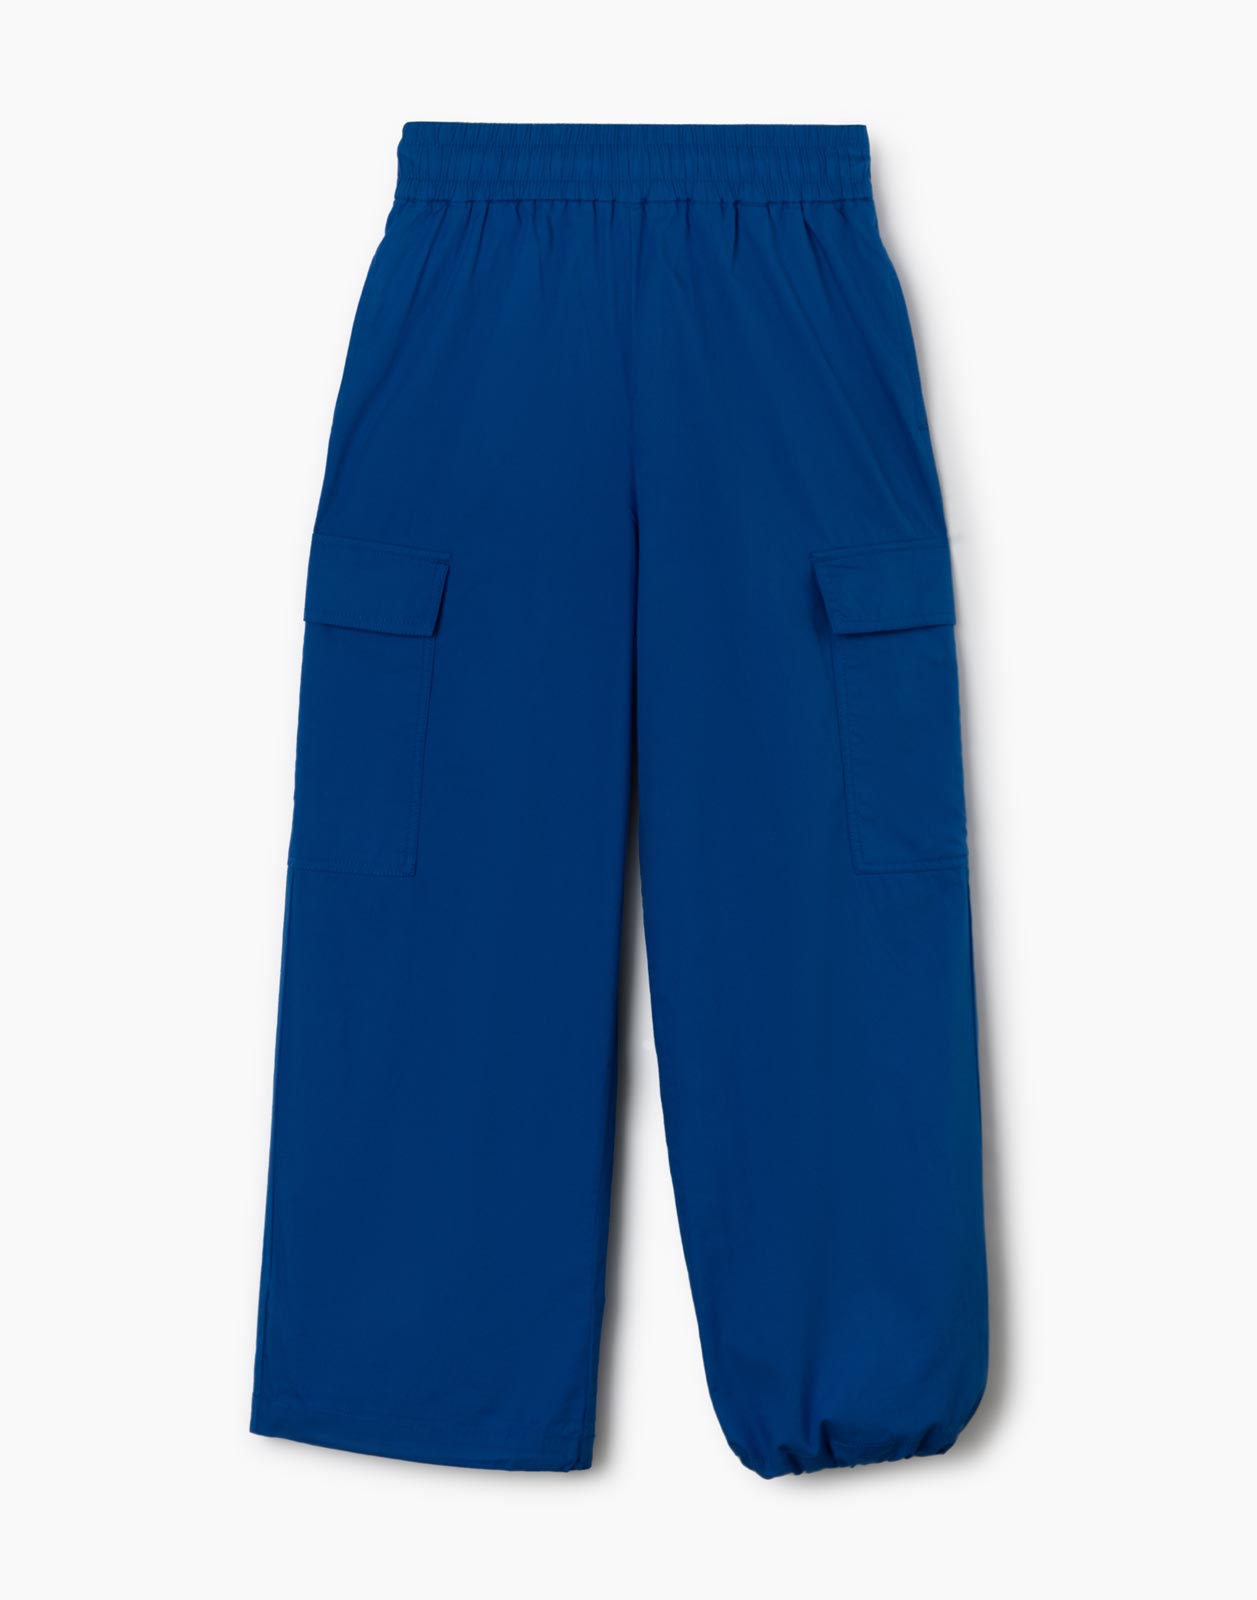 Синие брюки-трансформеры с карманами карго для девочки р.158